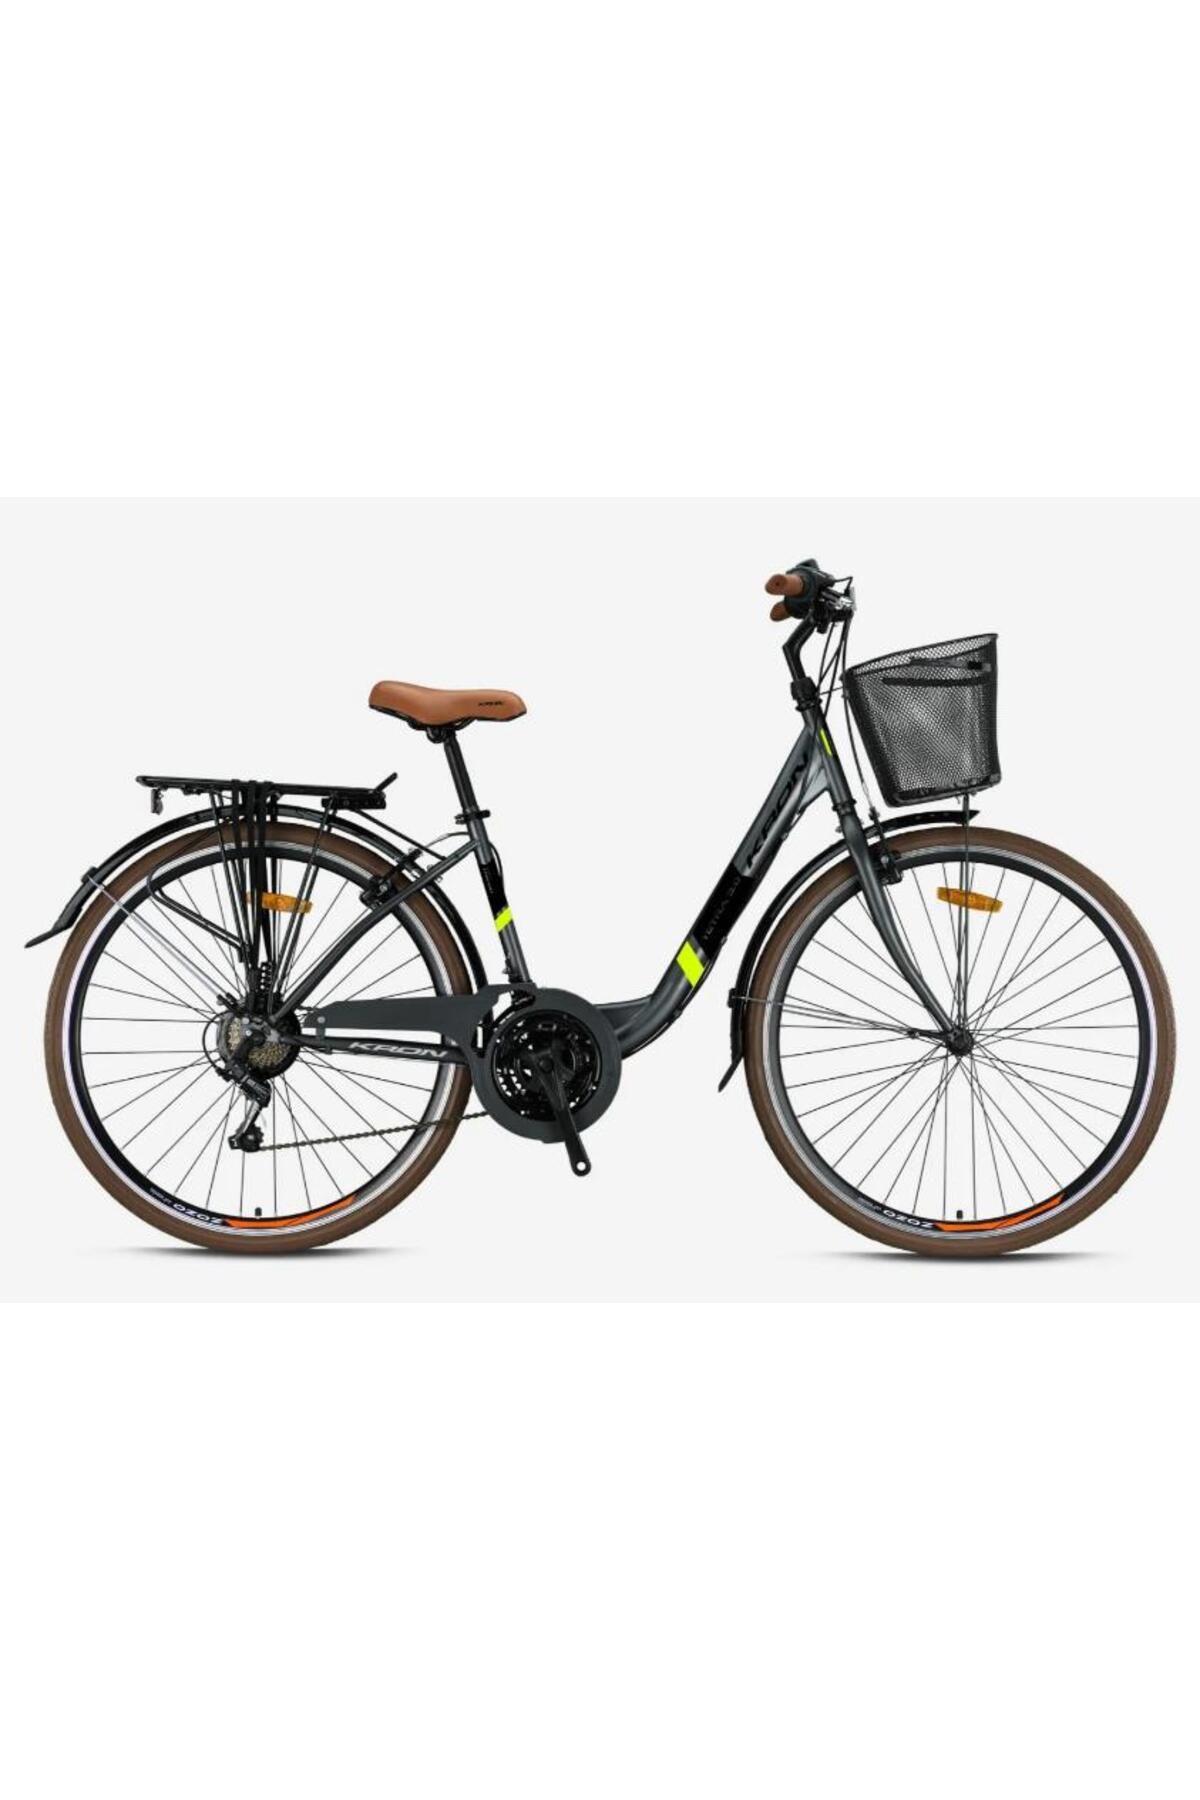 Kron TETRA 3.0 - 28Jant City Bike - 15' - 21 Vites - V.B. - Mat Füme-Siyah/Neon Sarı